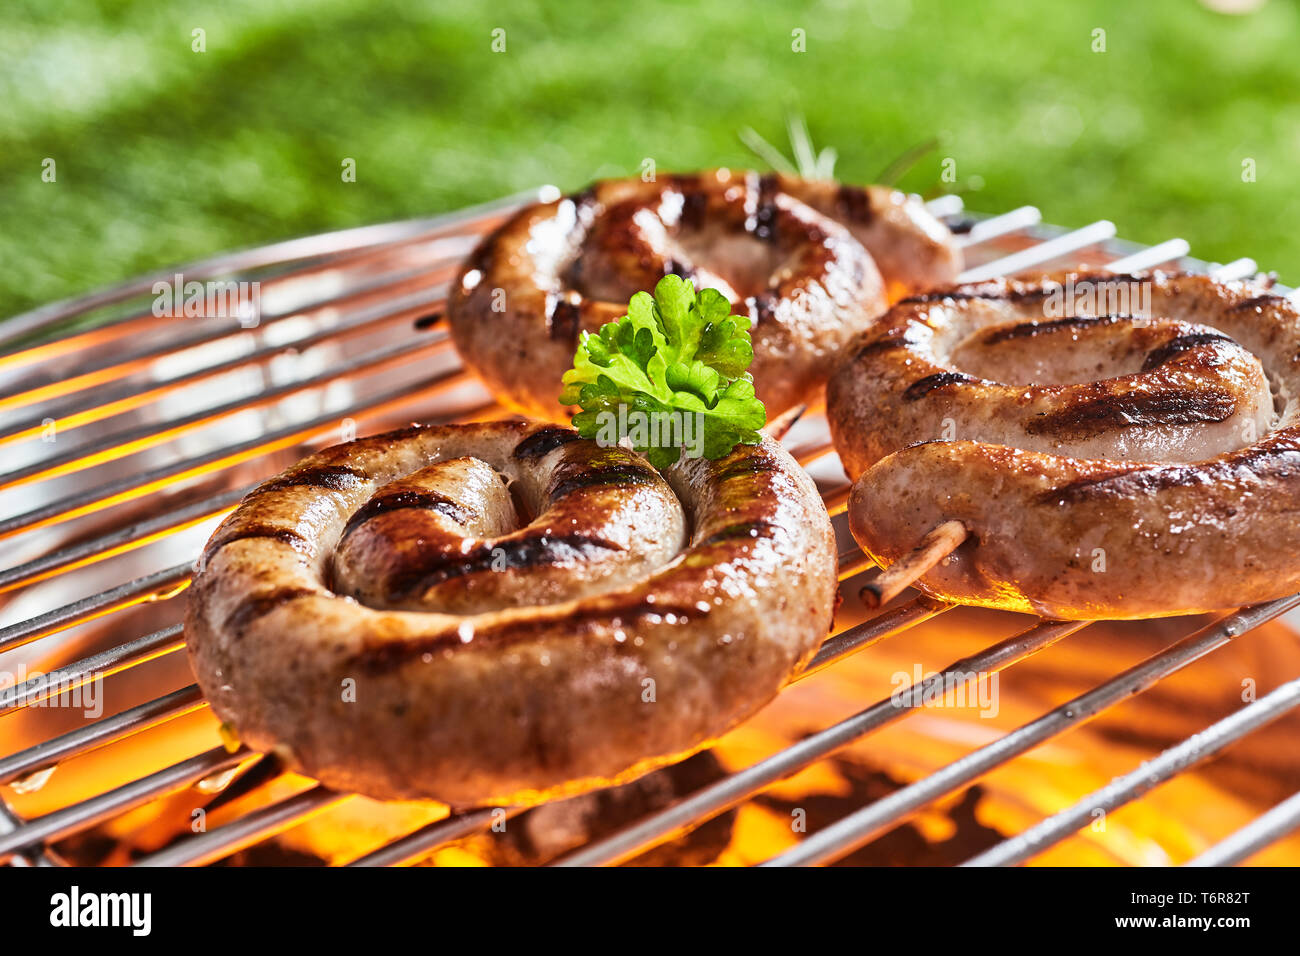 Spulen mit saftigen Rindfleisch Wurst auf dem Grill grillen über glühenden Kohlen, draußen im Garten oder Park an einem sommerlichen Picknick Stockfoto